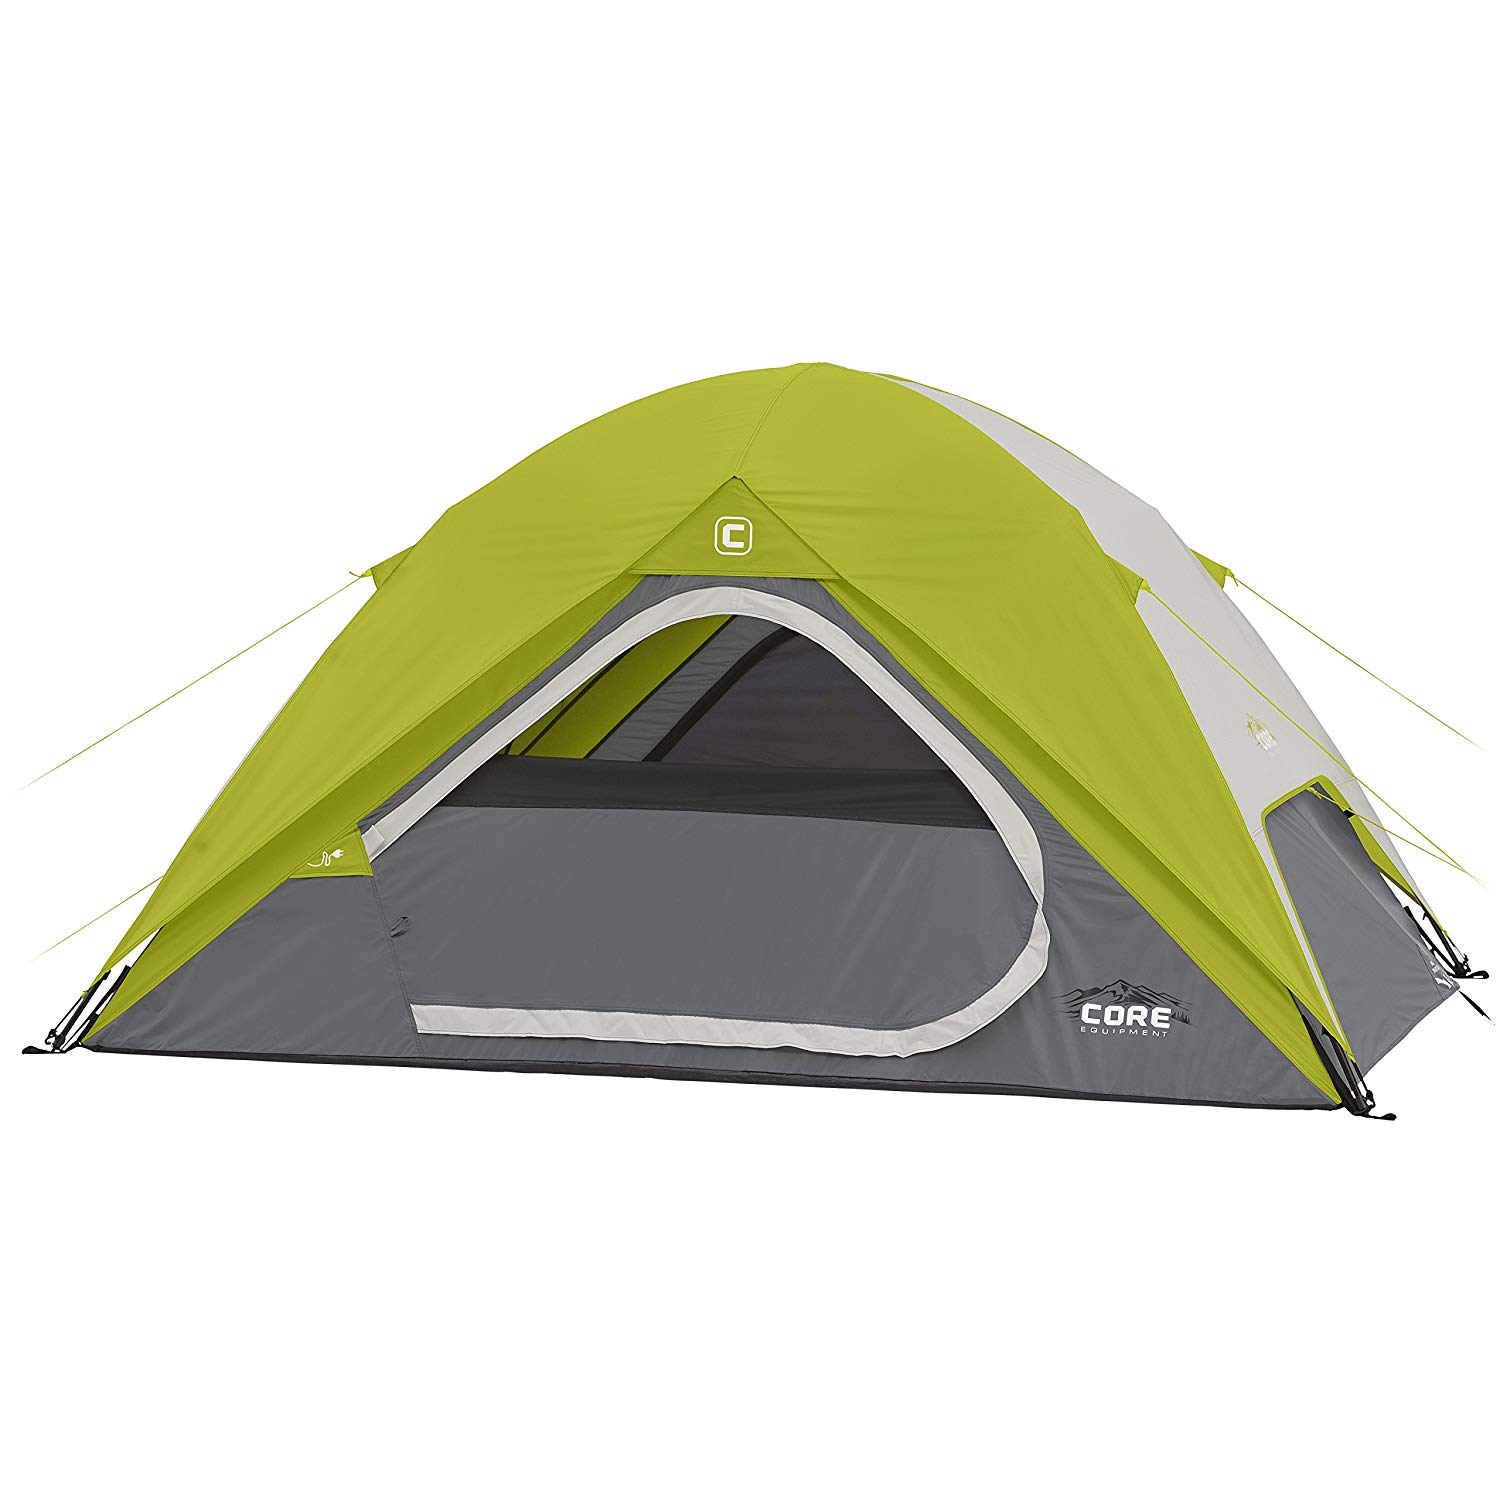 CORE Equipment 4 Person Dome Tent - 9' x 7'